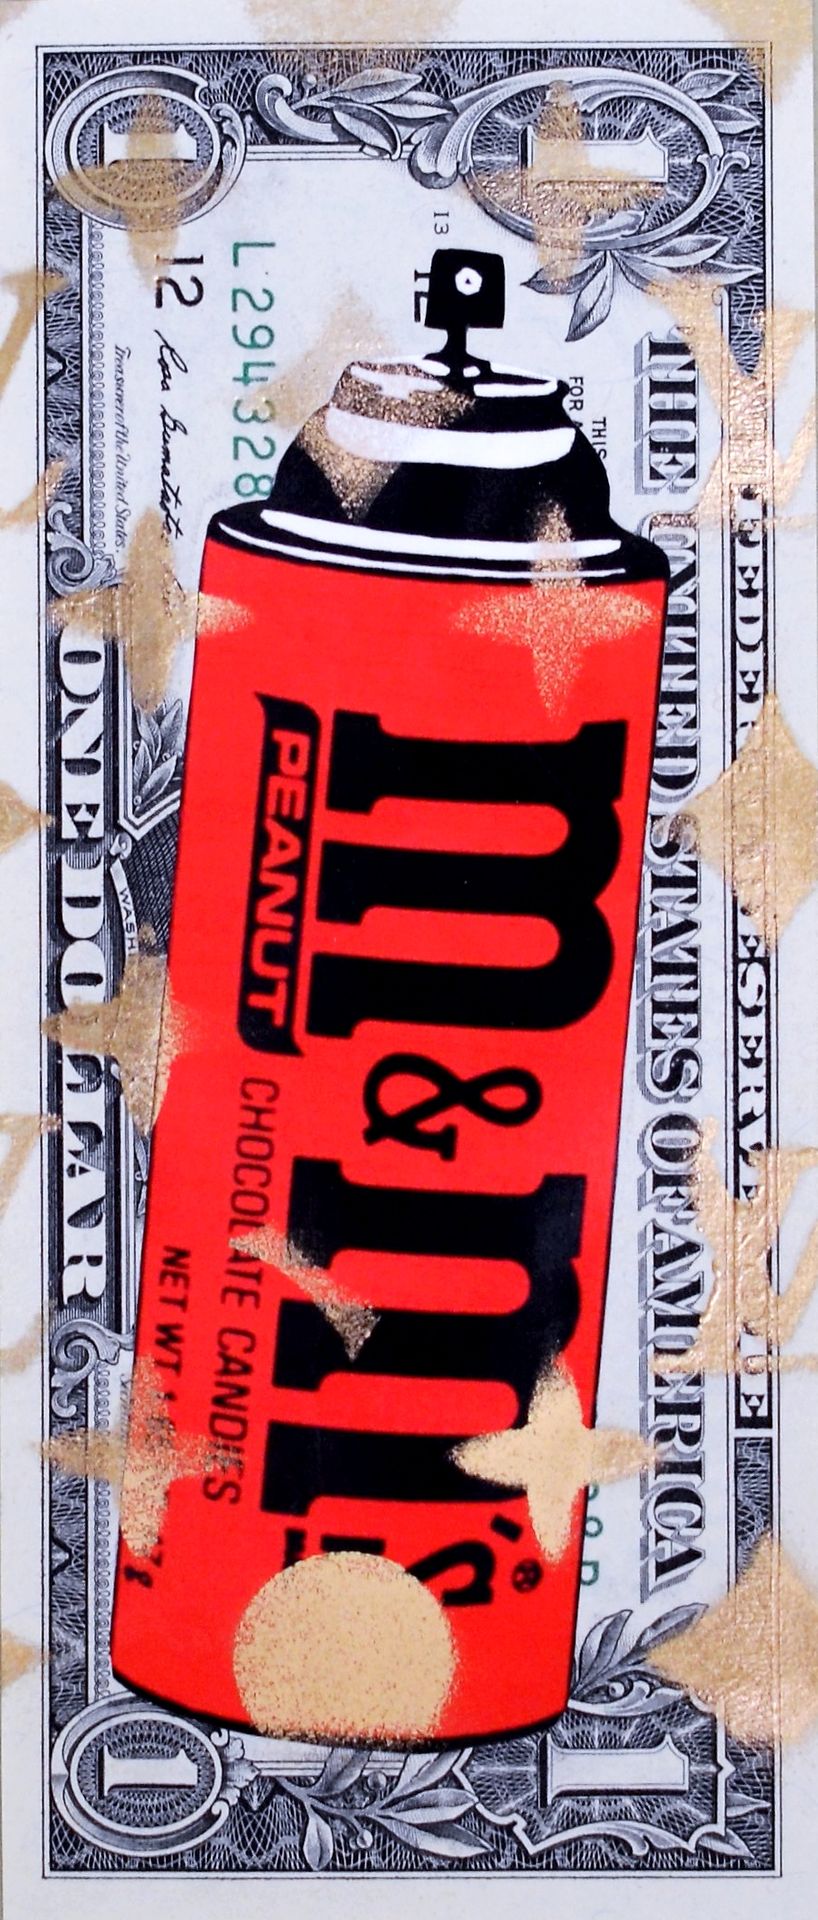 Death NYC 纽约市的死亡

M&M喷雾2013

纸币上的拼贴和混合媒体

独特的工作

有艺术家的签名

尺寸：15 x 6 cm





拍品将由&hellip;